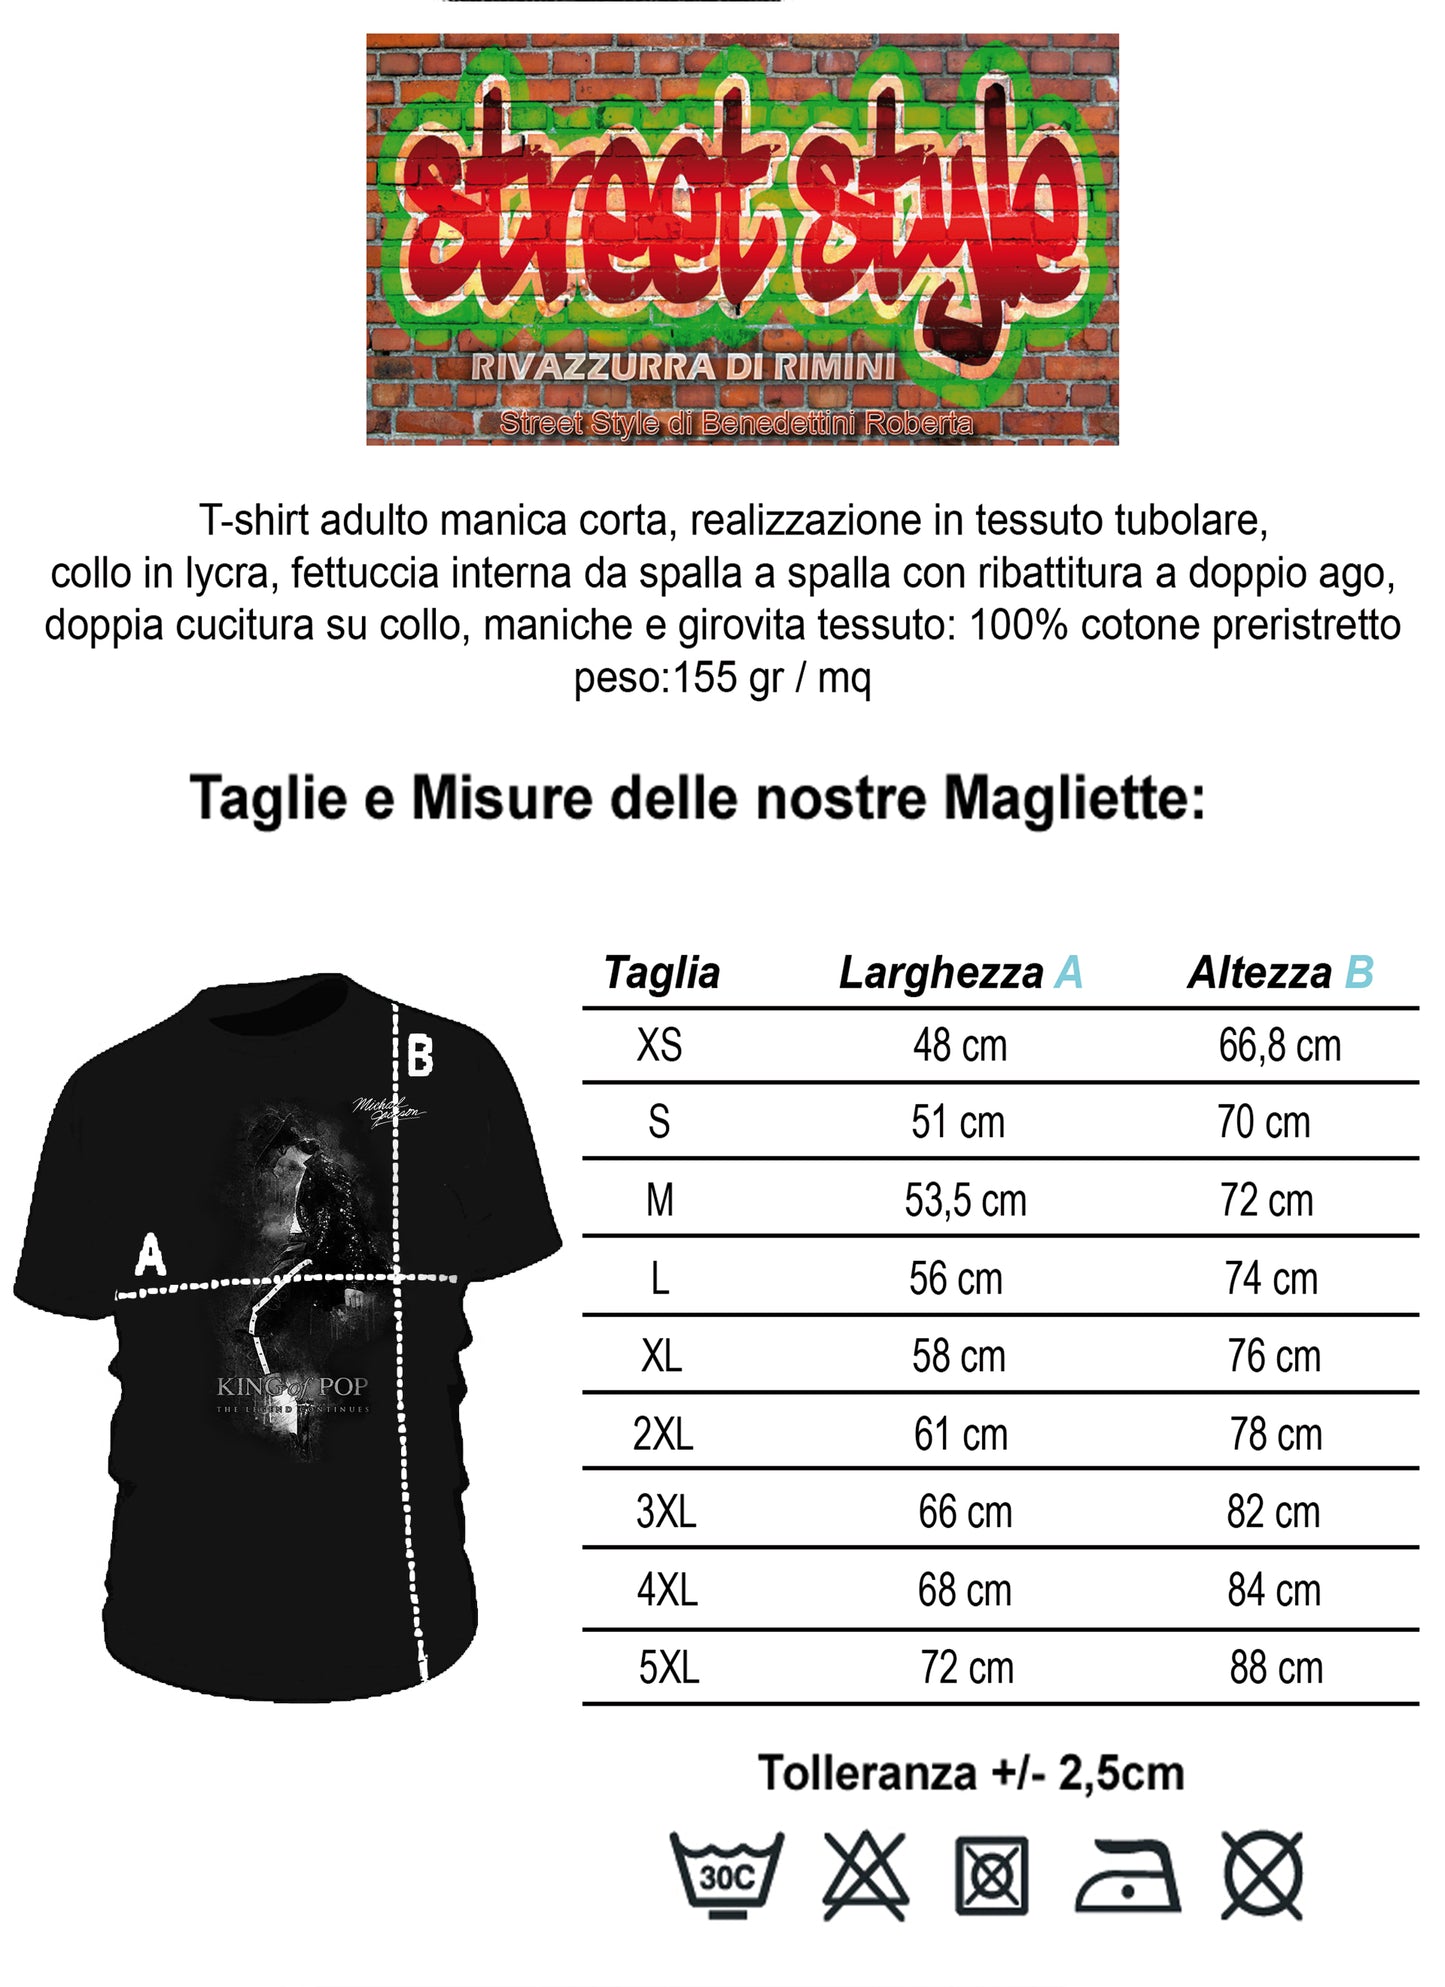 The Legend Michael Jackson Cantante Soggetto 18-20-49-3 T-shirt Urban Men Uomo 100% Cotone Pettinato JK